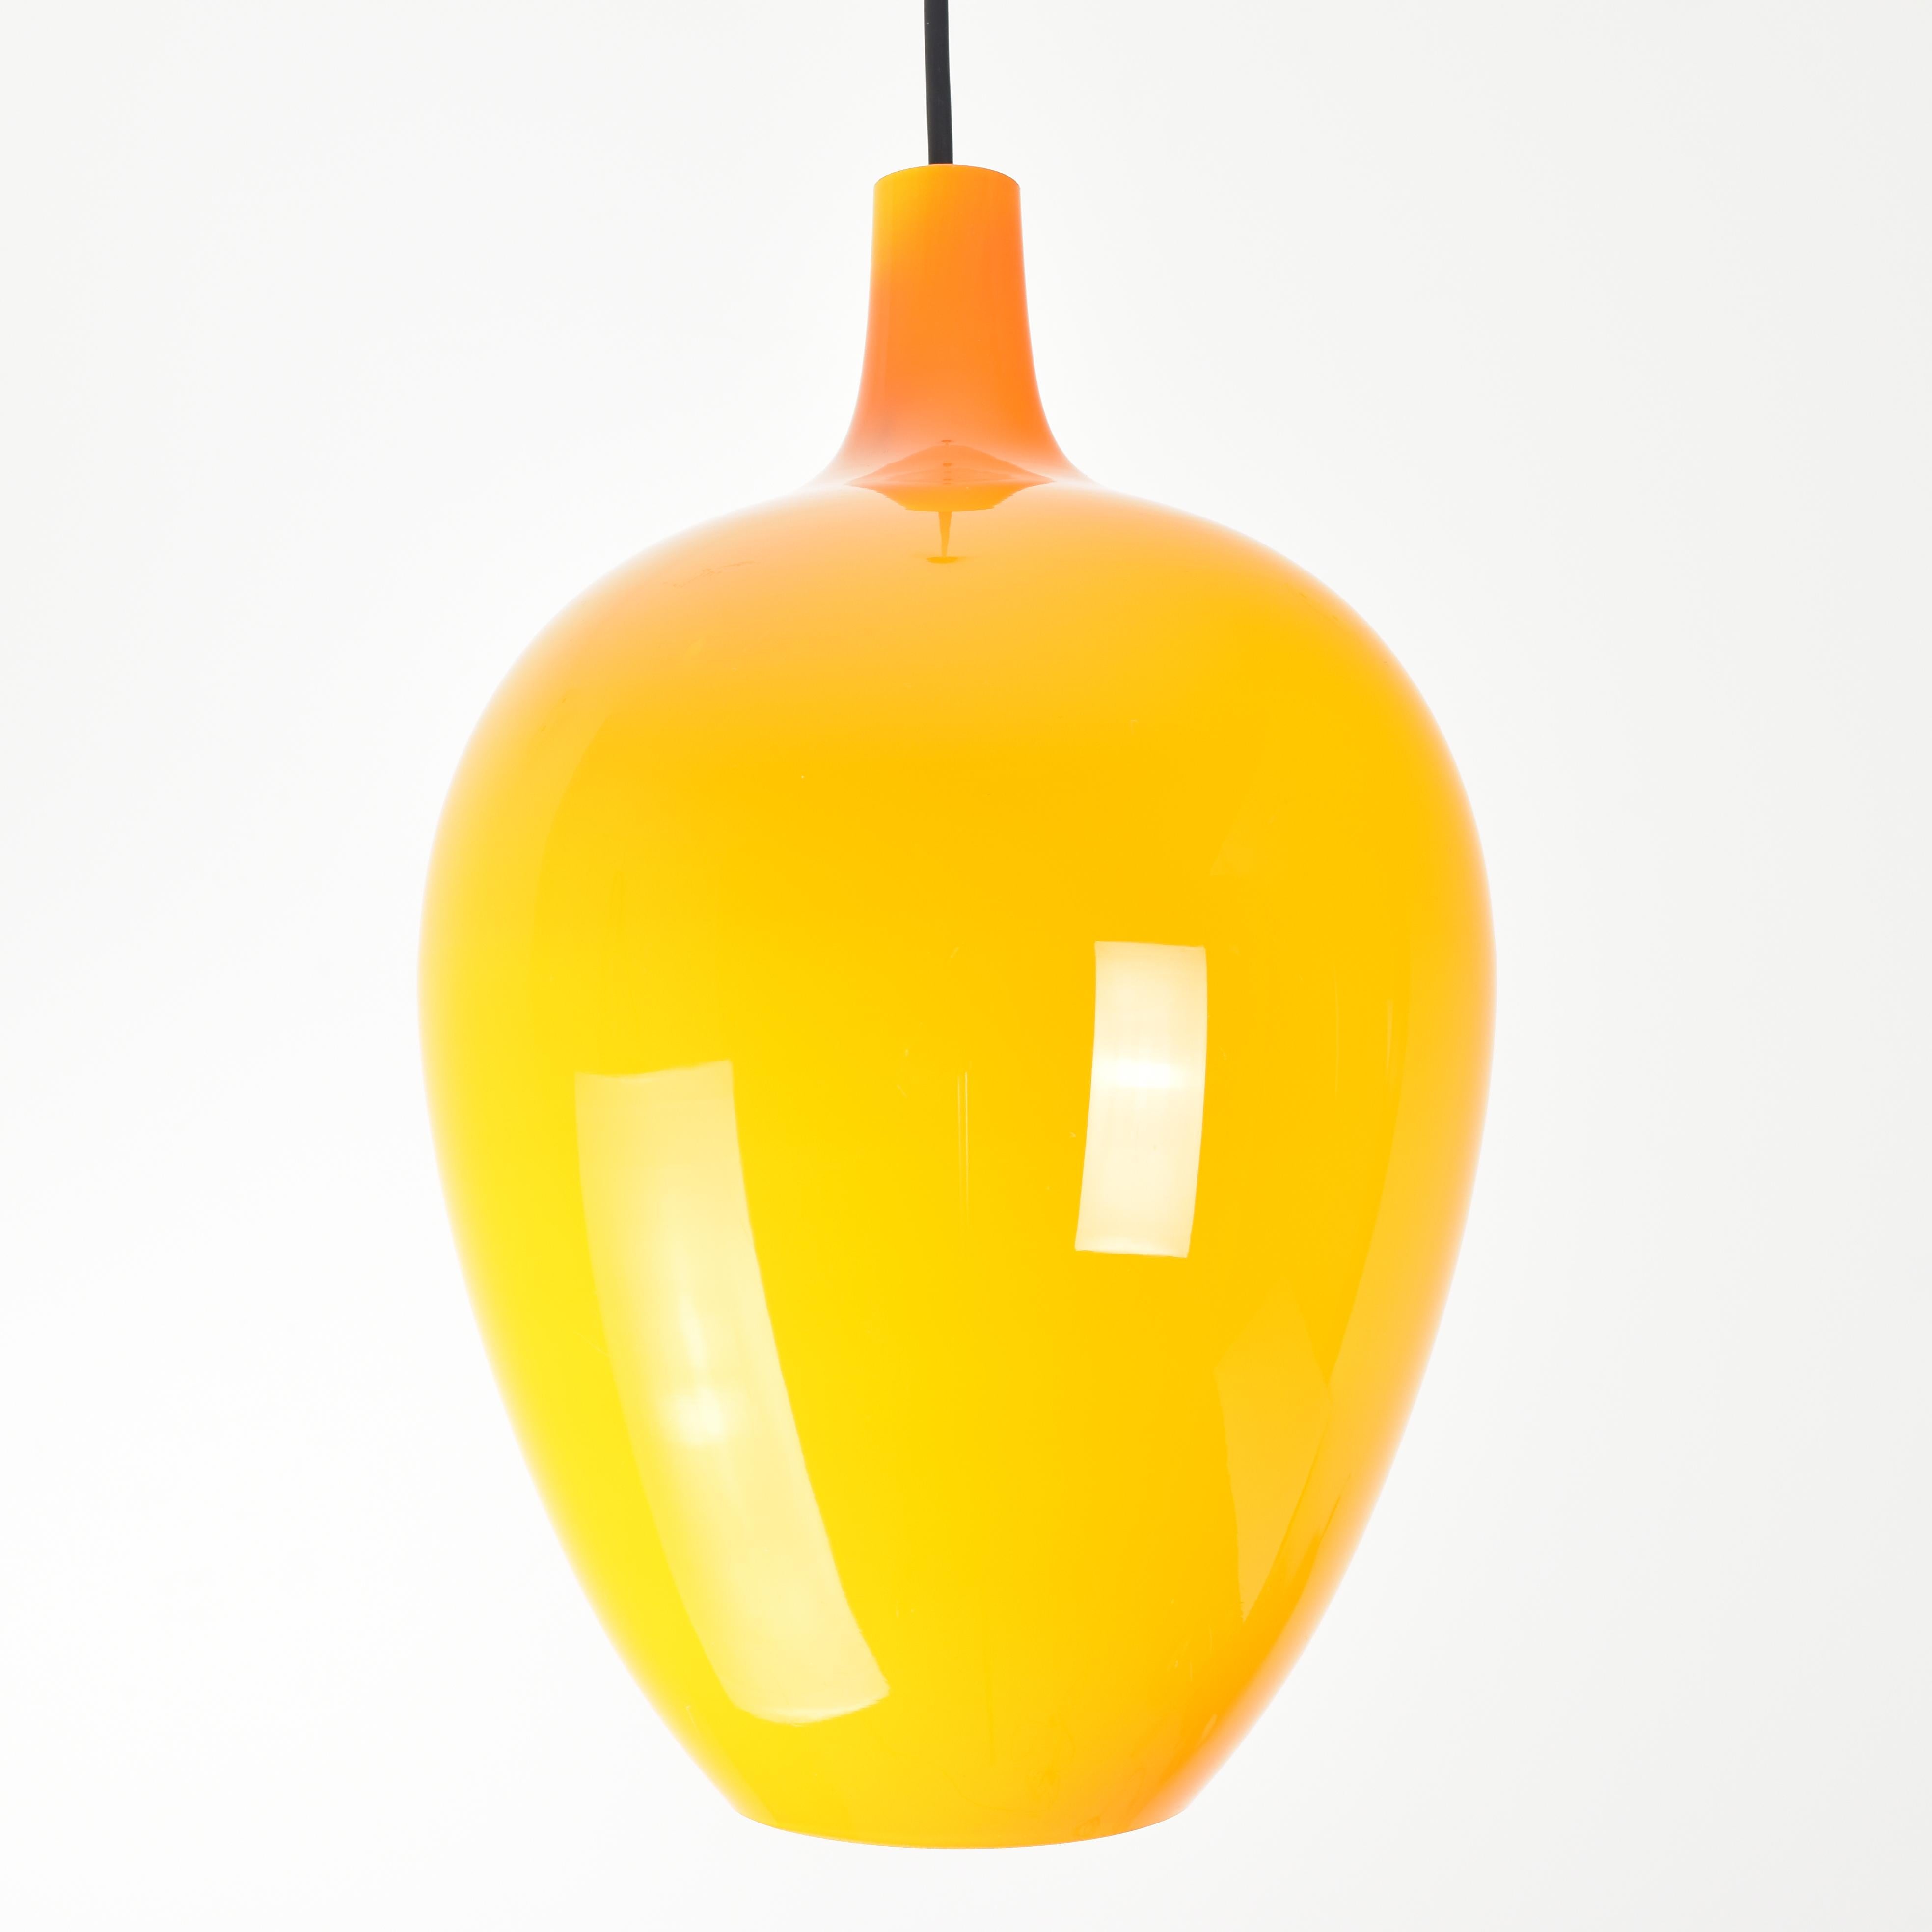 Ce plafonnier vintage de Gino Vistosi Murano, datant des années 1960, est une pièce étonnante de design d'éclairage qui se caractérise par son abat-jour en verre à carapace orange. La lampe présente une Silhouette épurée et élégante.

L'abat-jour